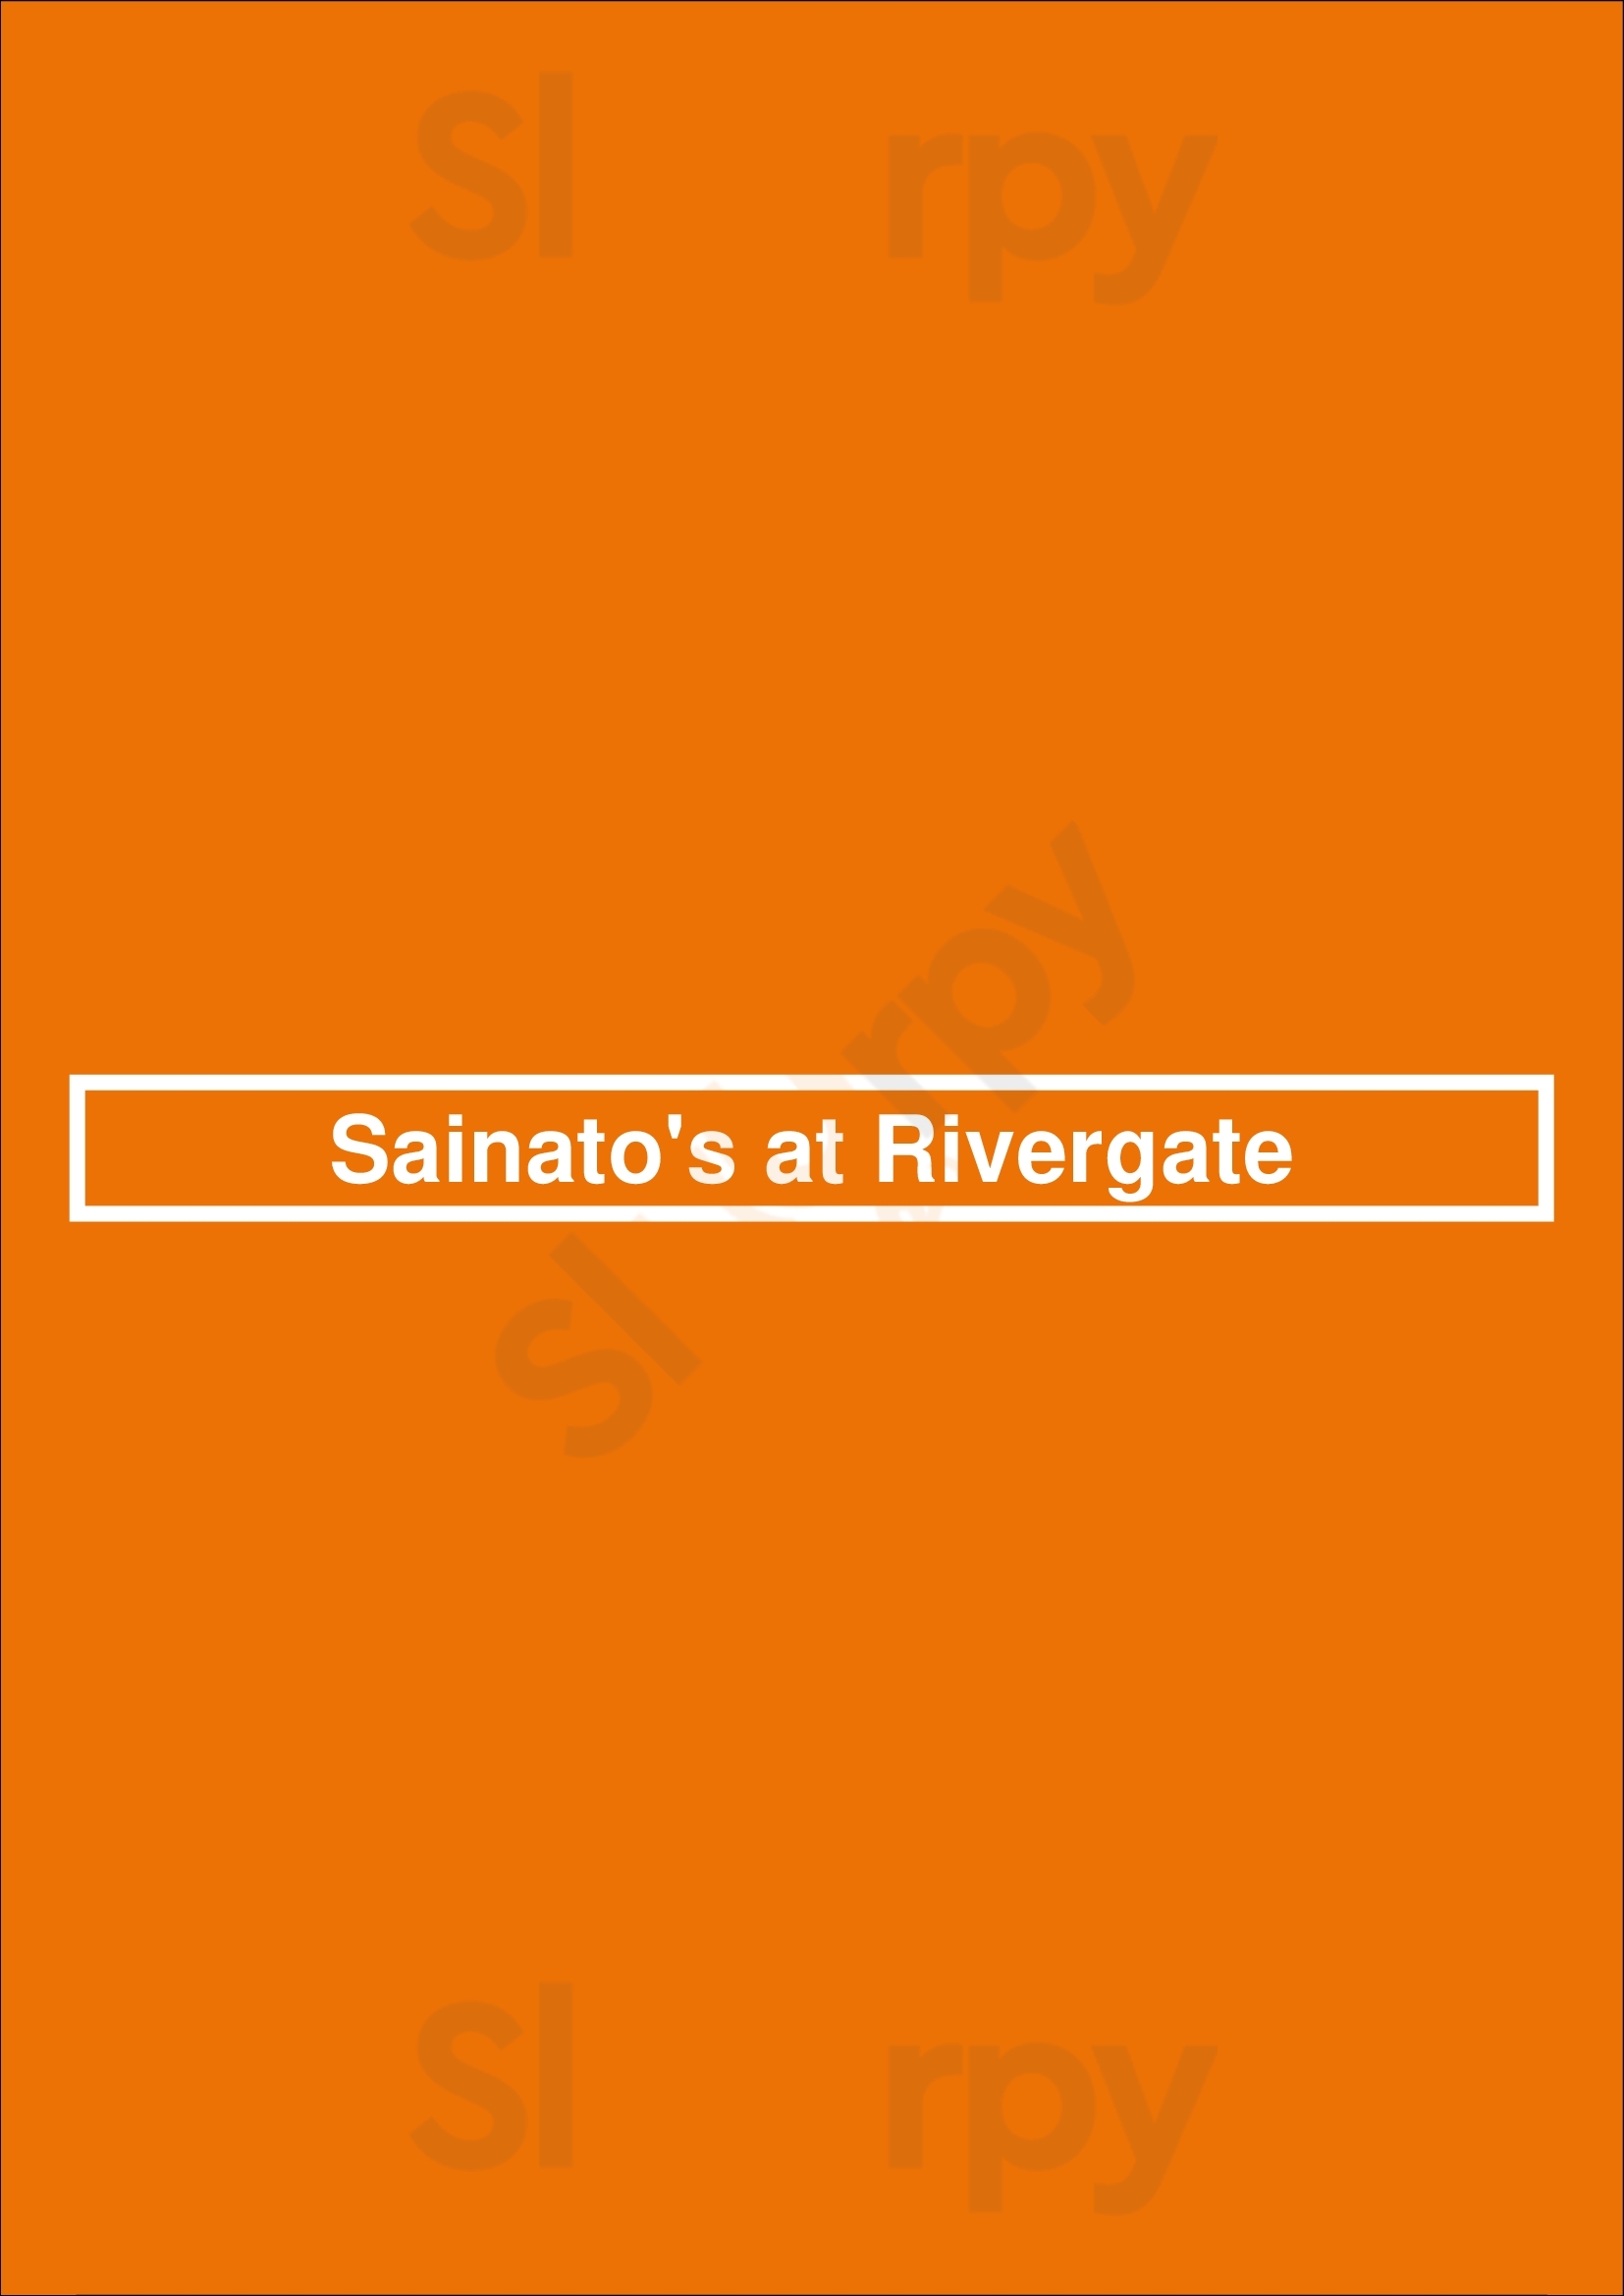 Sainato's At Rivergate Cleveland Menu - 1